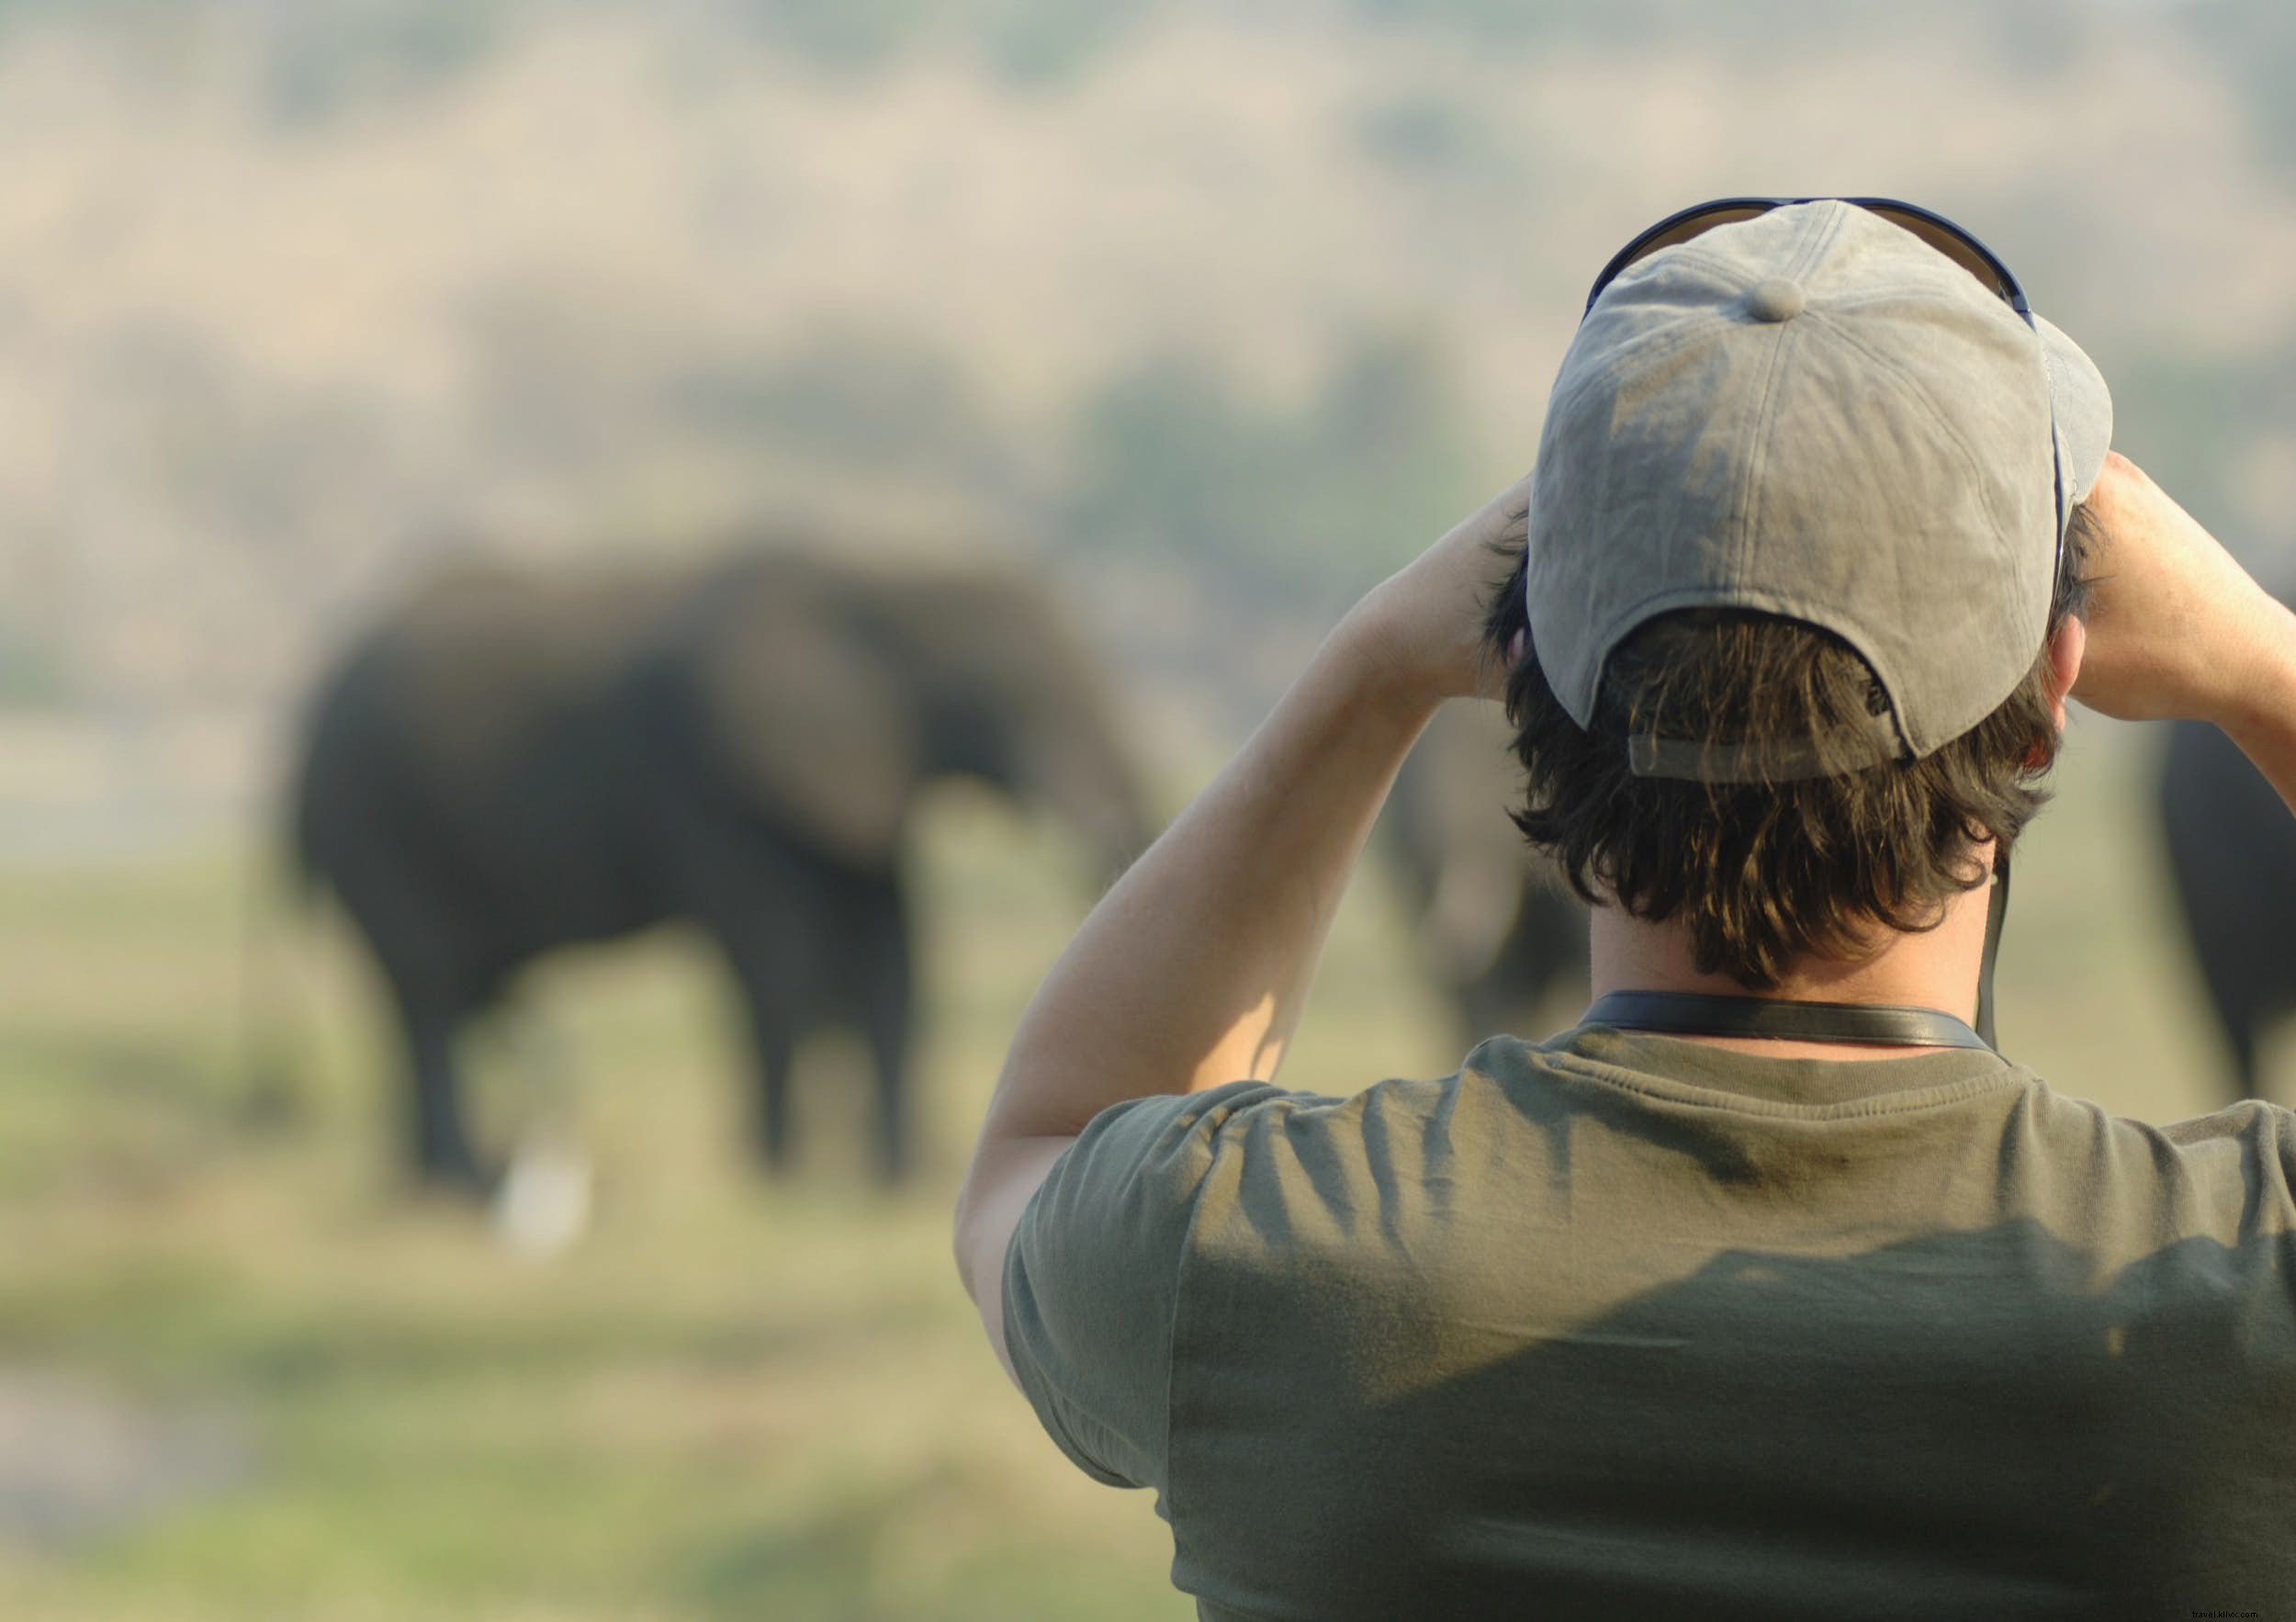 Animales de safari:la historia de los elefantes (y los mejores lugares para verlos) 